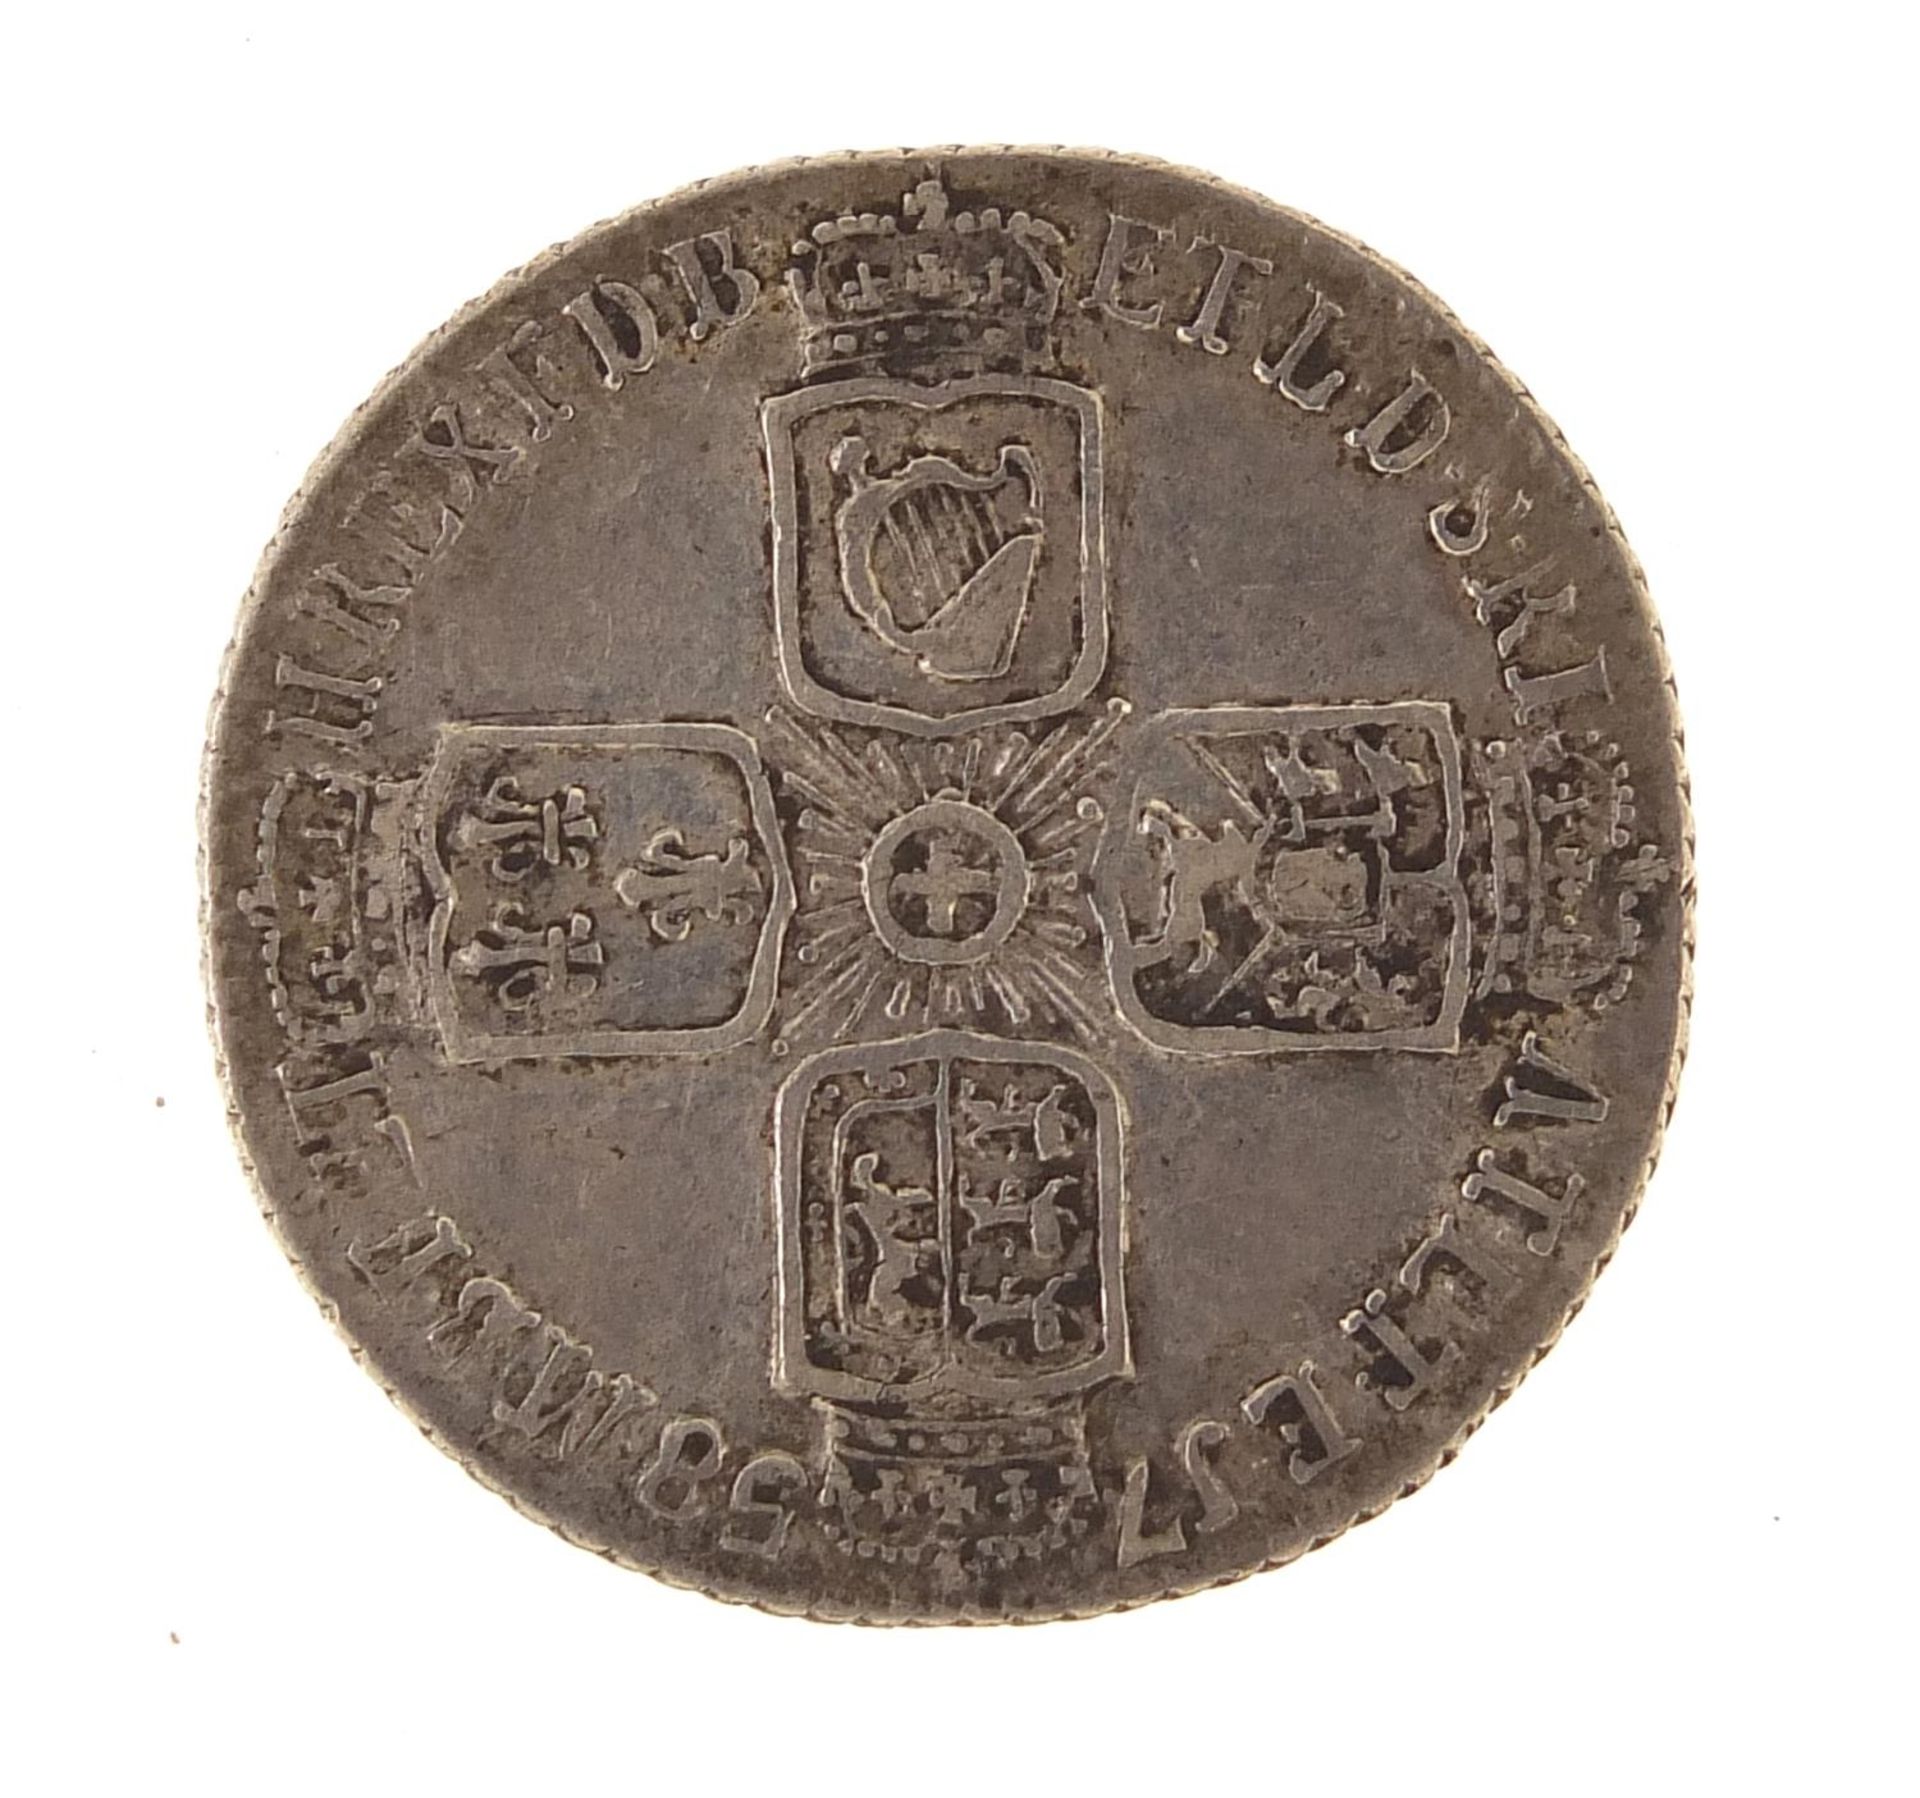 George II 1758 sixpence